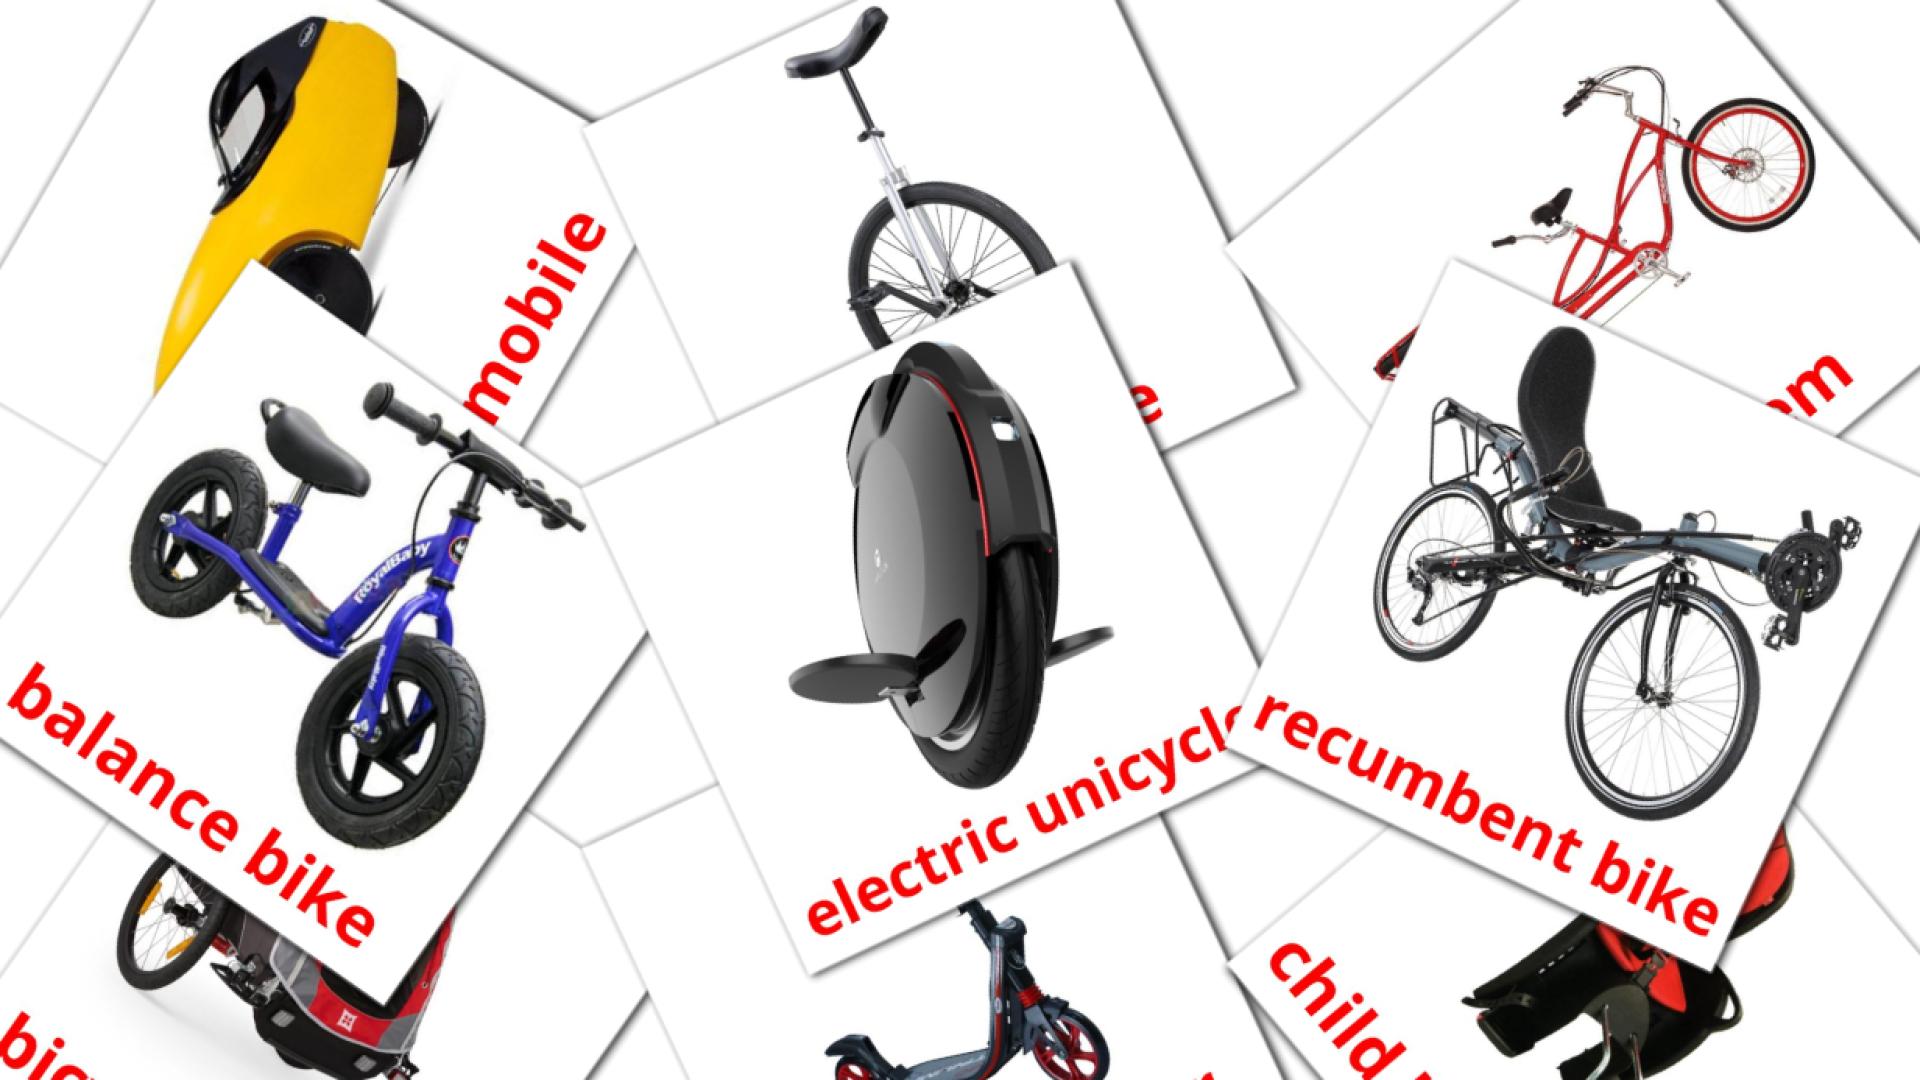 16 Bildkarten für Bicycle transport